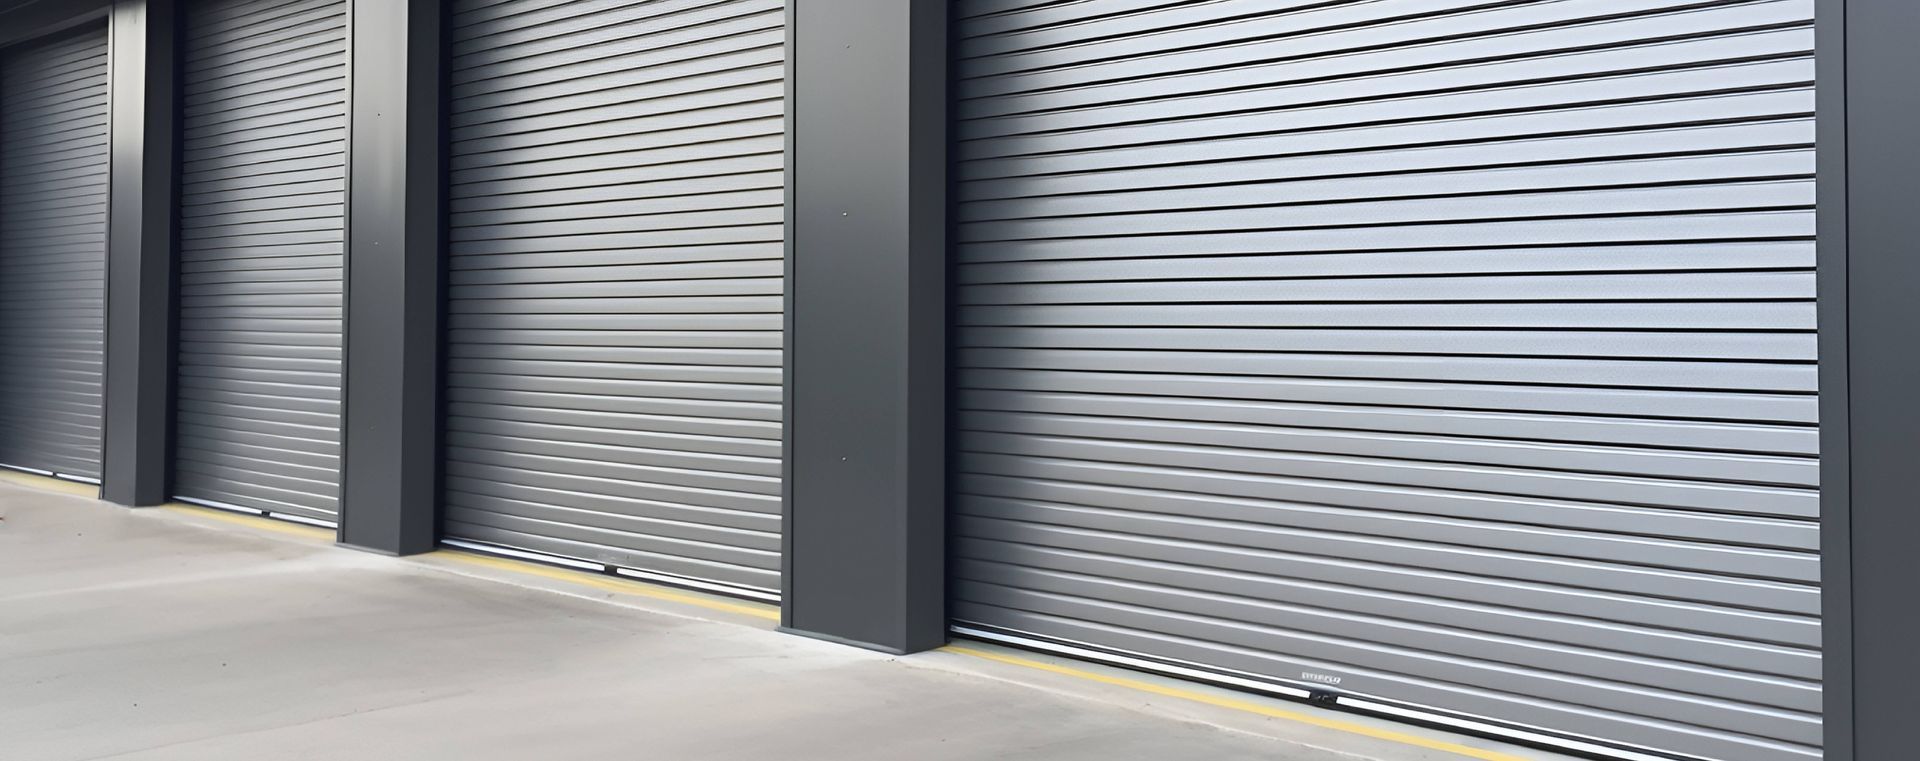 Factors to Consider For Commercial Garage Door Installation